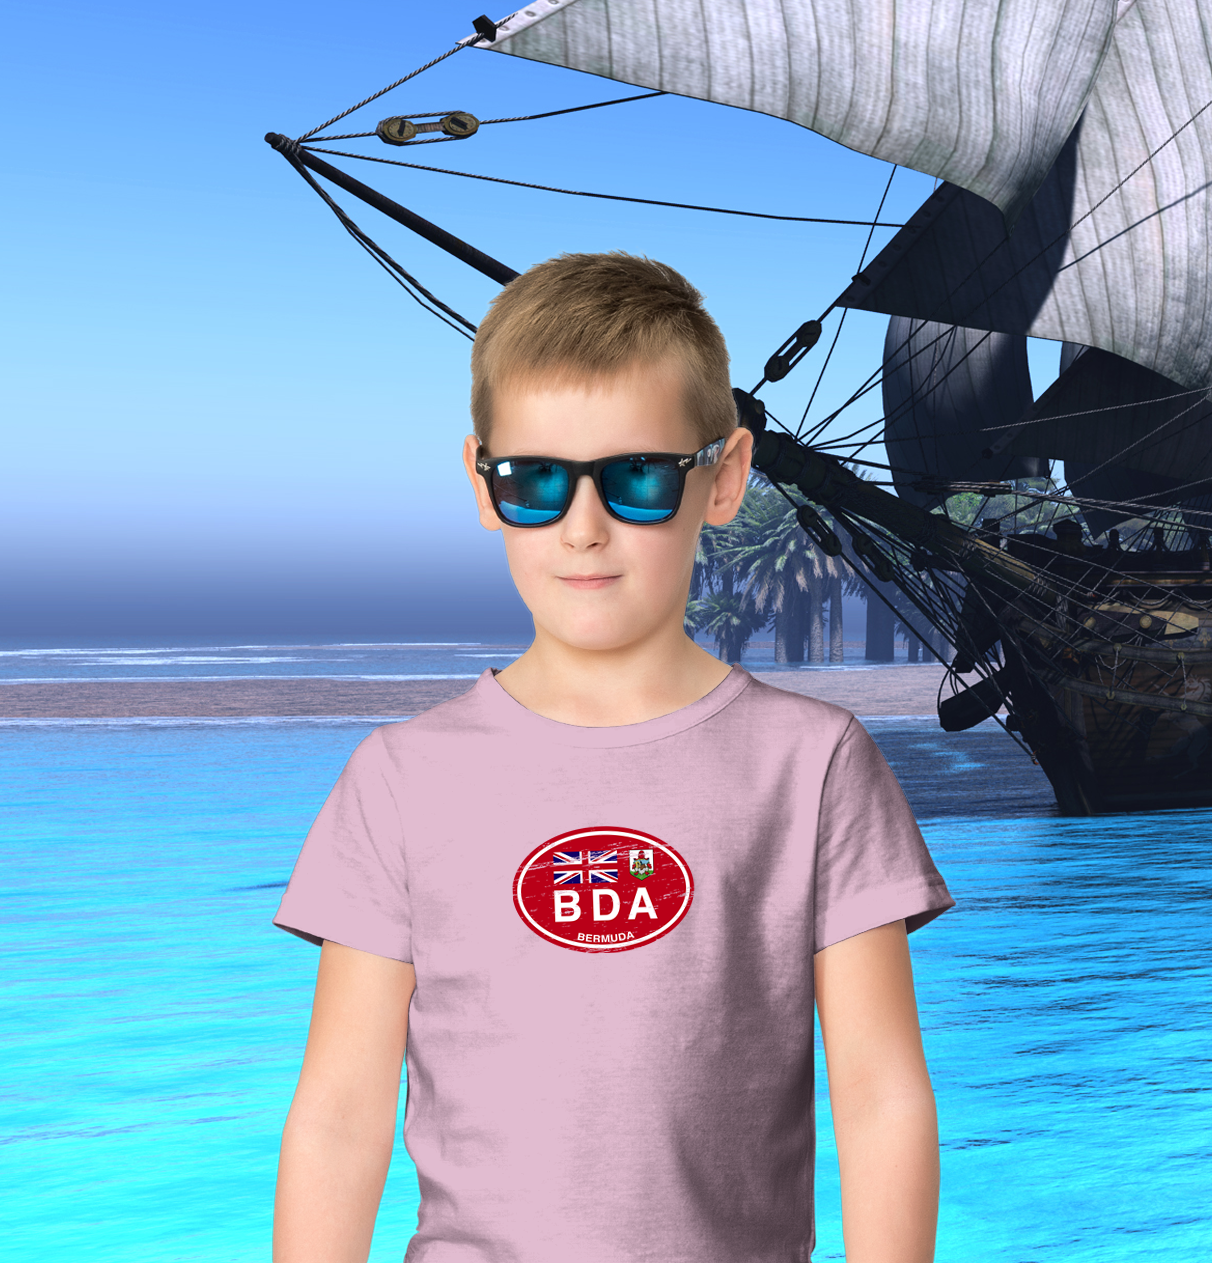 Bermuda Flag Youth T-Shirt - My Destination Location